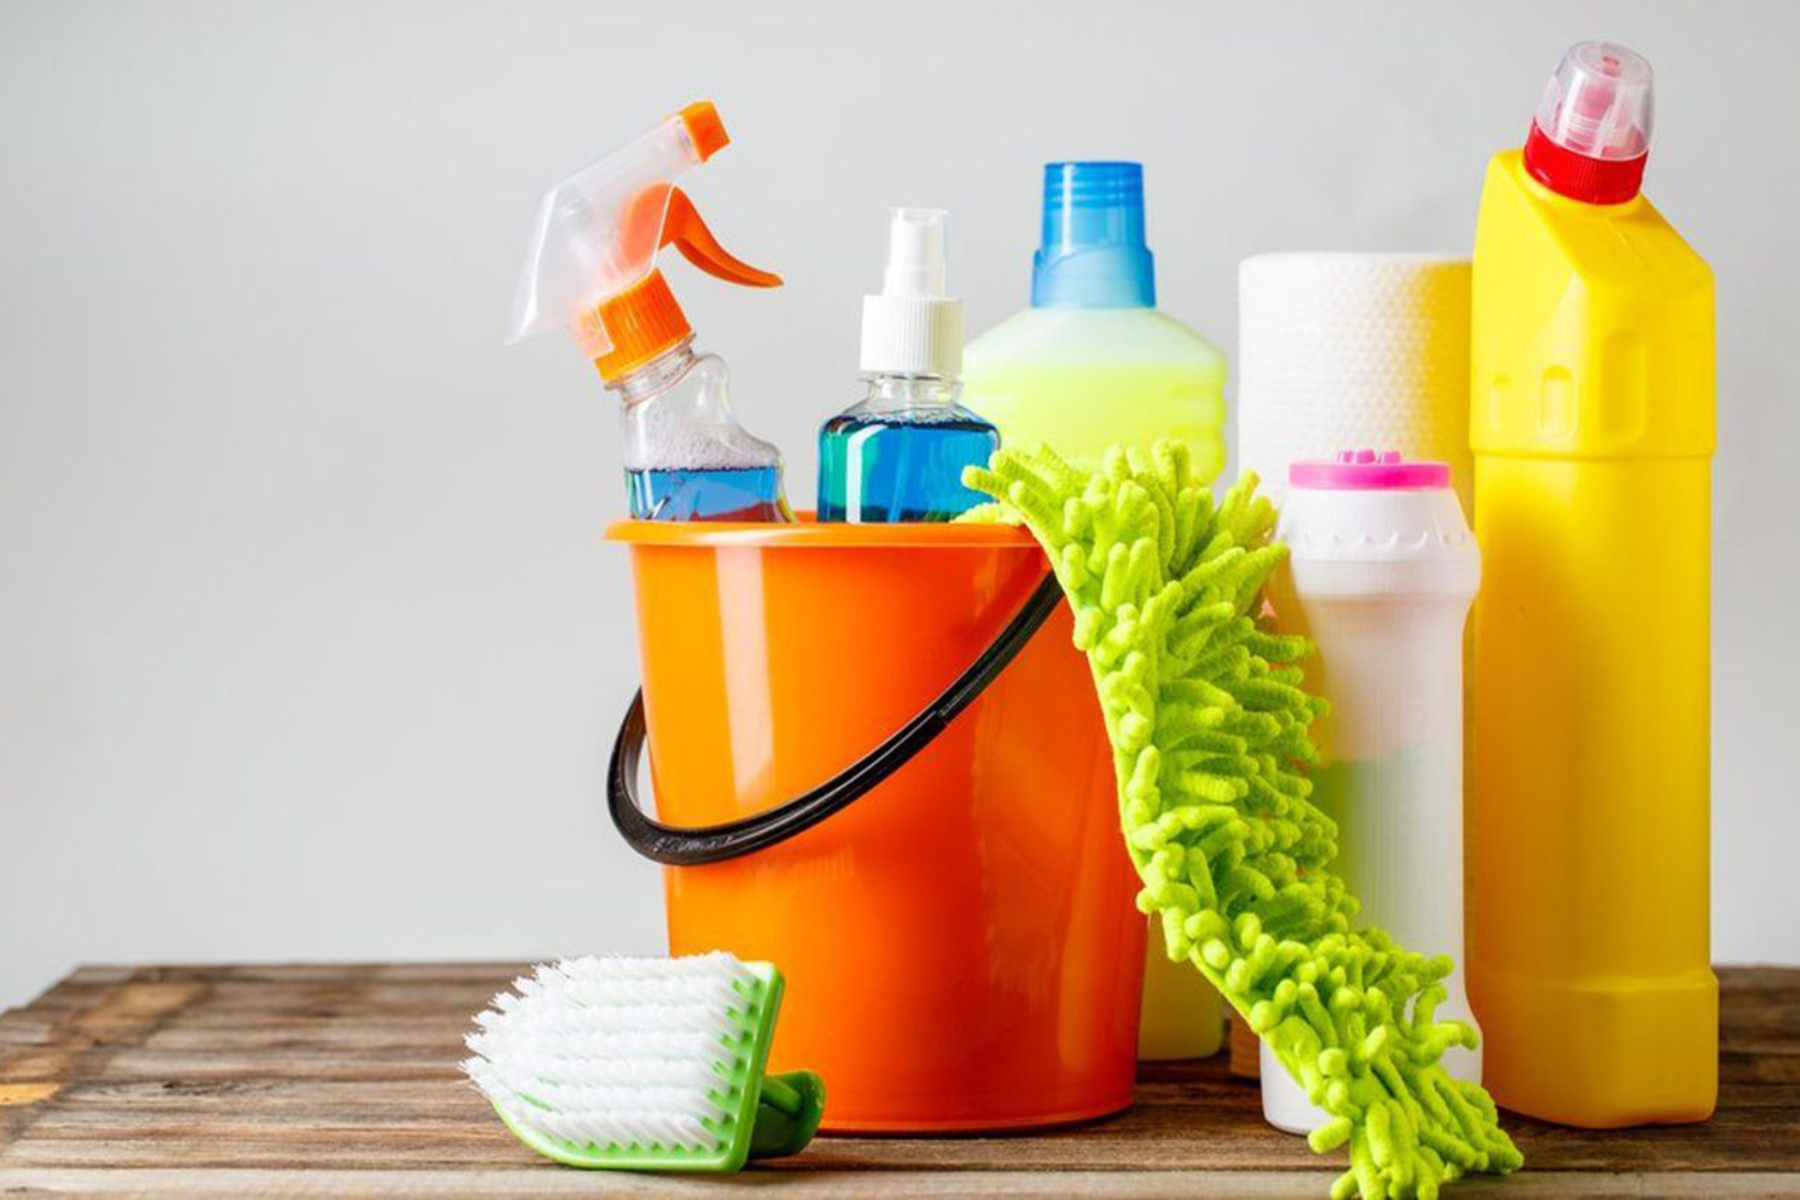 Προϊόντα καθαρισμού: Τα προϊόντα καθαρισμού εκπέμπουν ανθυγιεινές τοξίνες